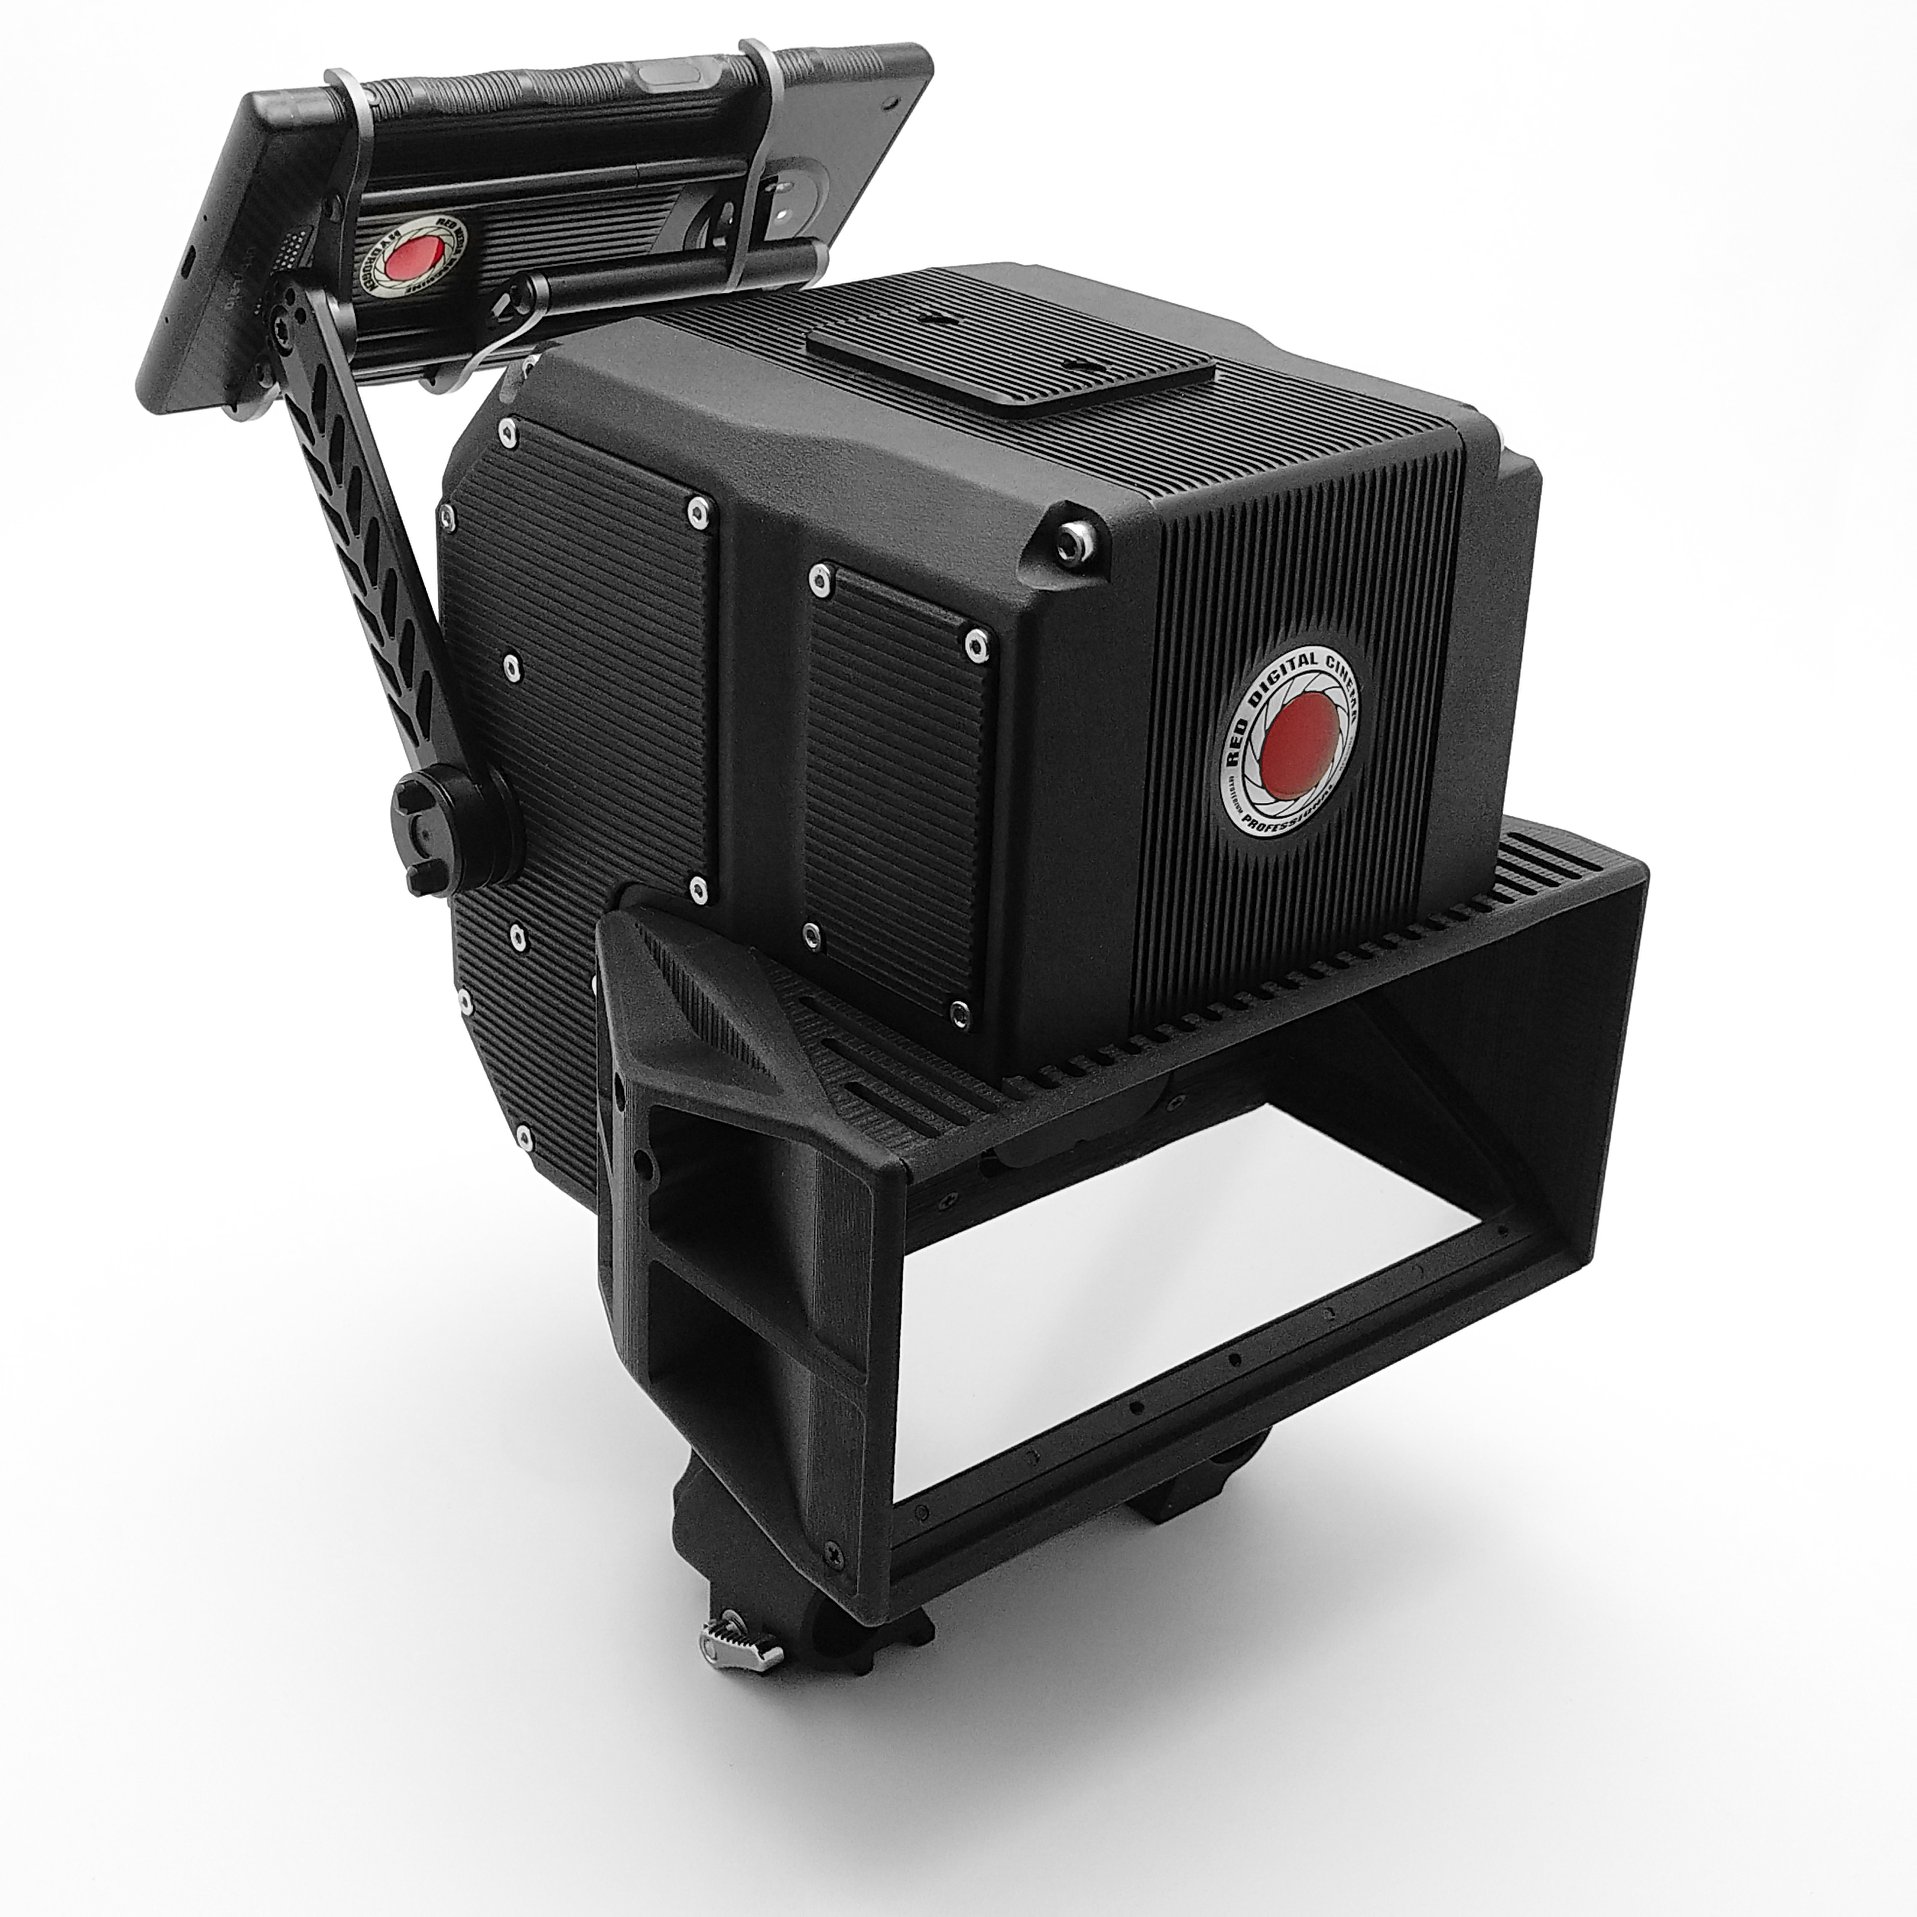 RED está preparando uma câmera 3D para o Hydrogen One